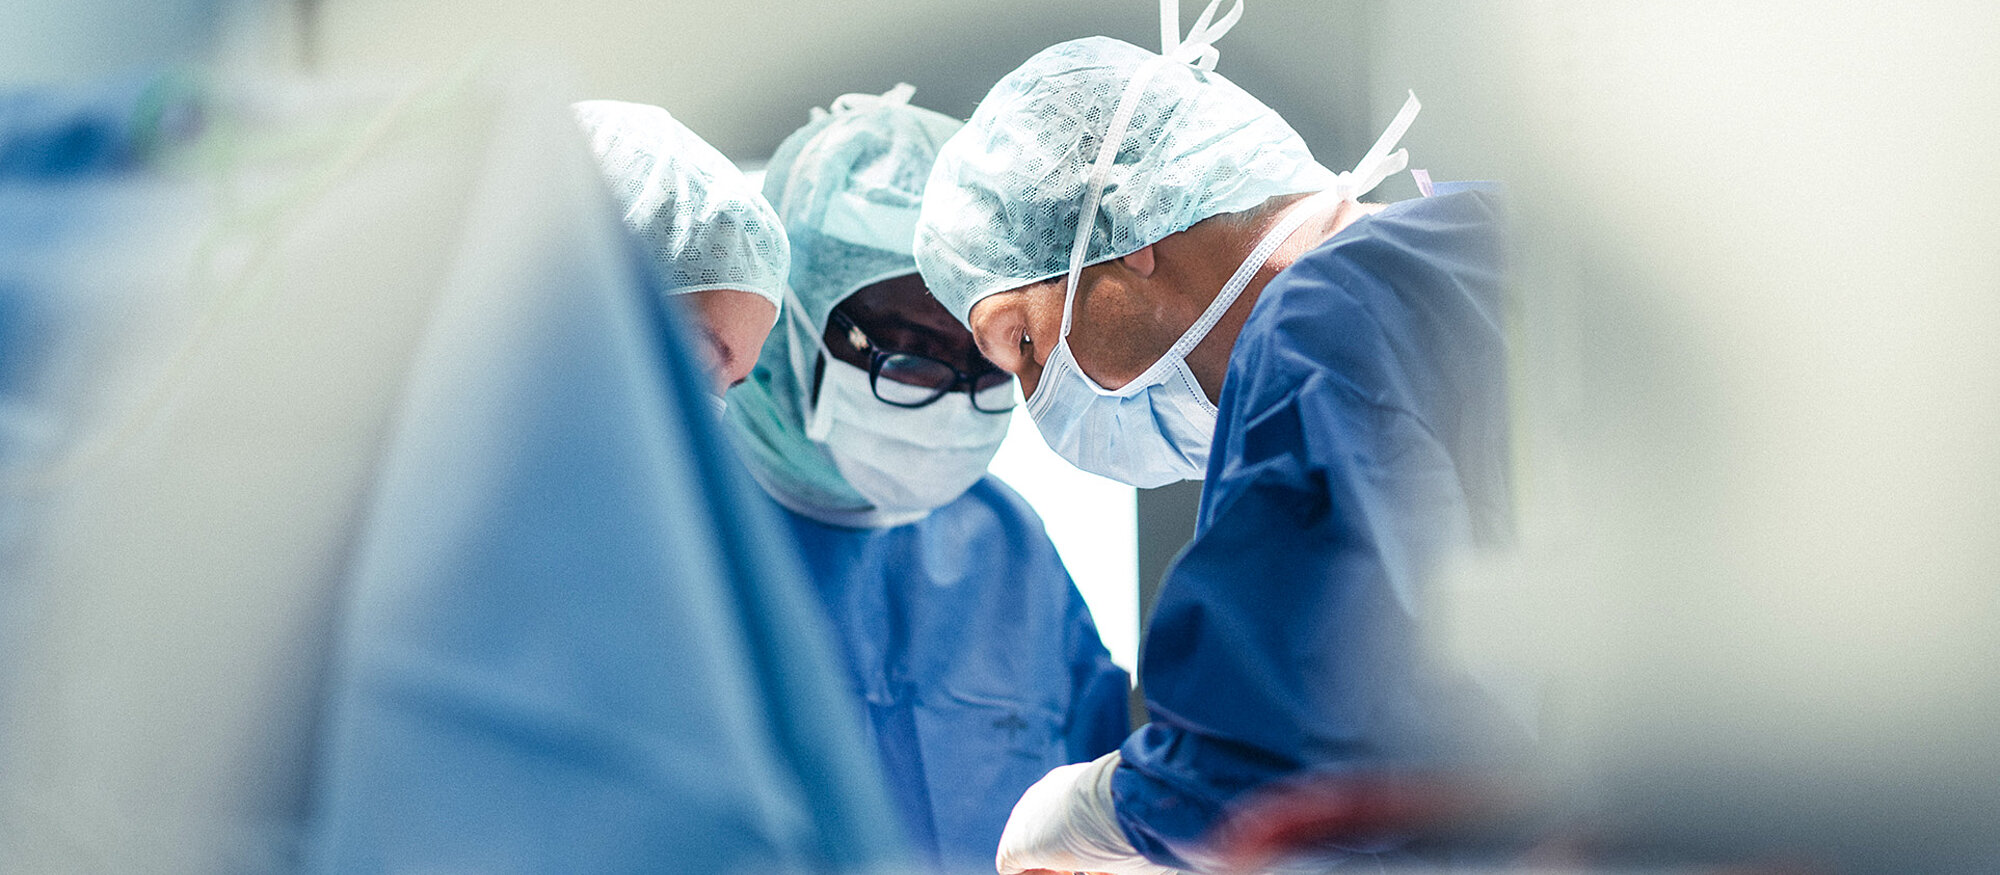 Ärzte im OP, Blautöne, Darstellung diffus, im Bild Banner "Den geeigneten Spezialisten finden", Button "Arzt finden"